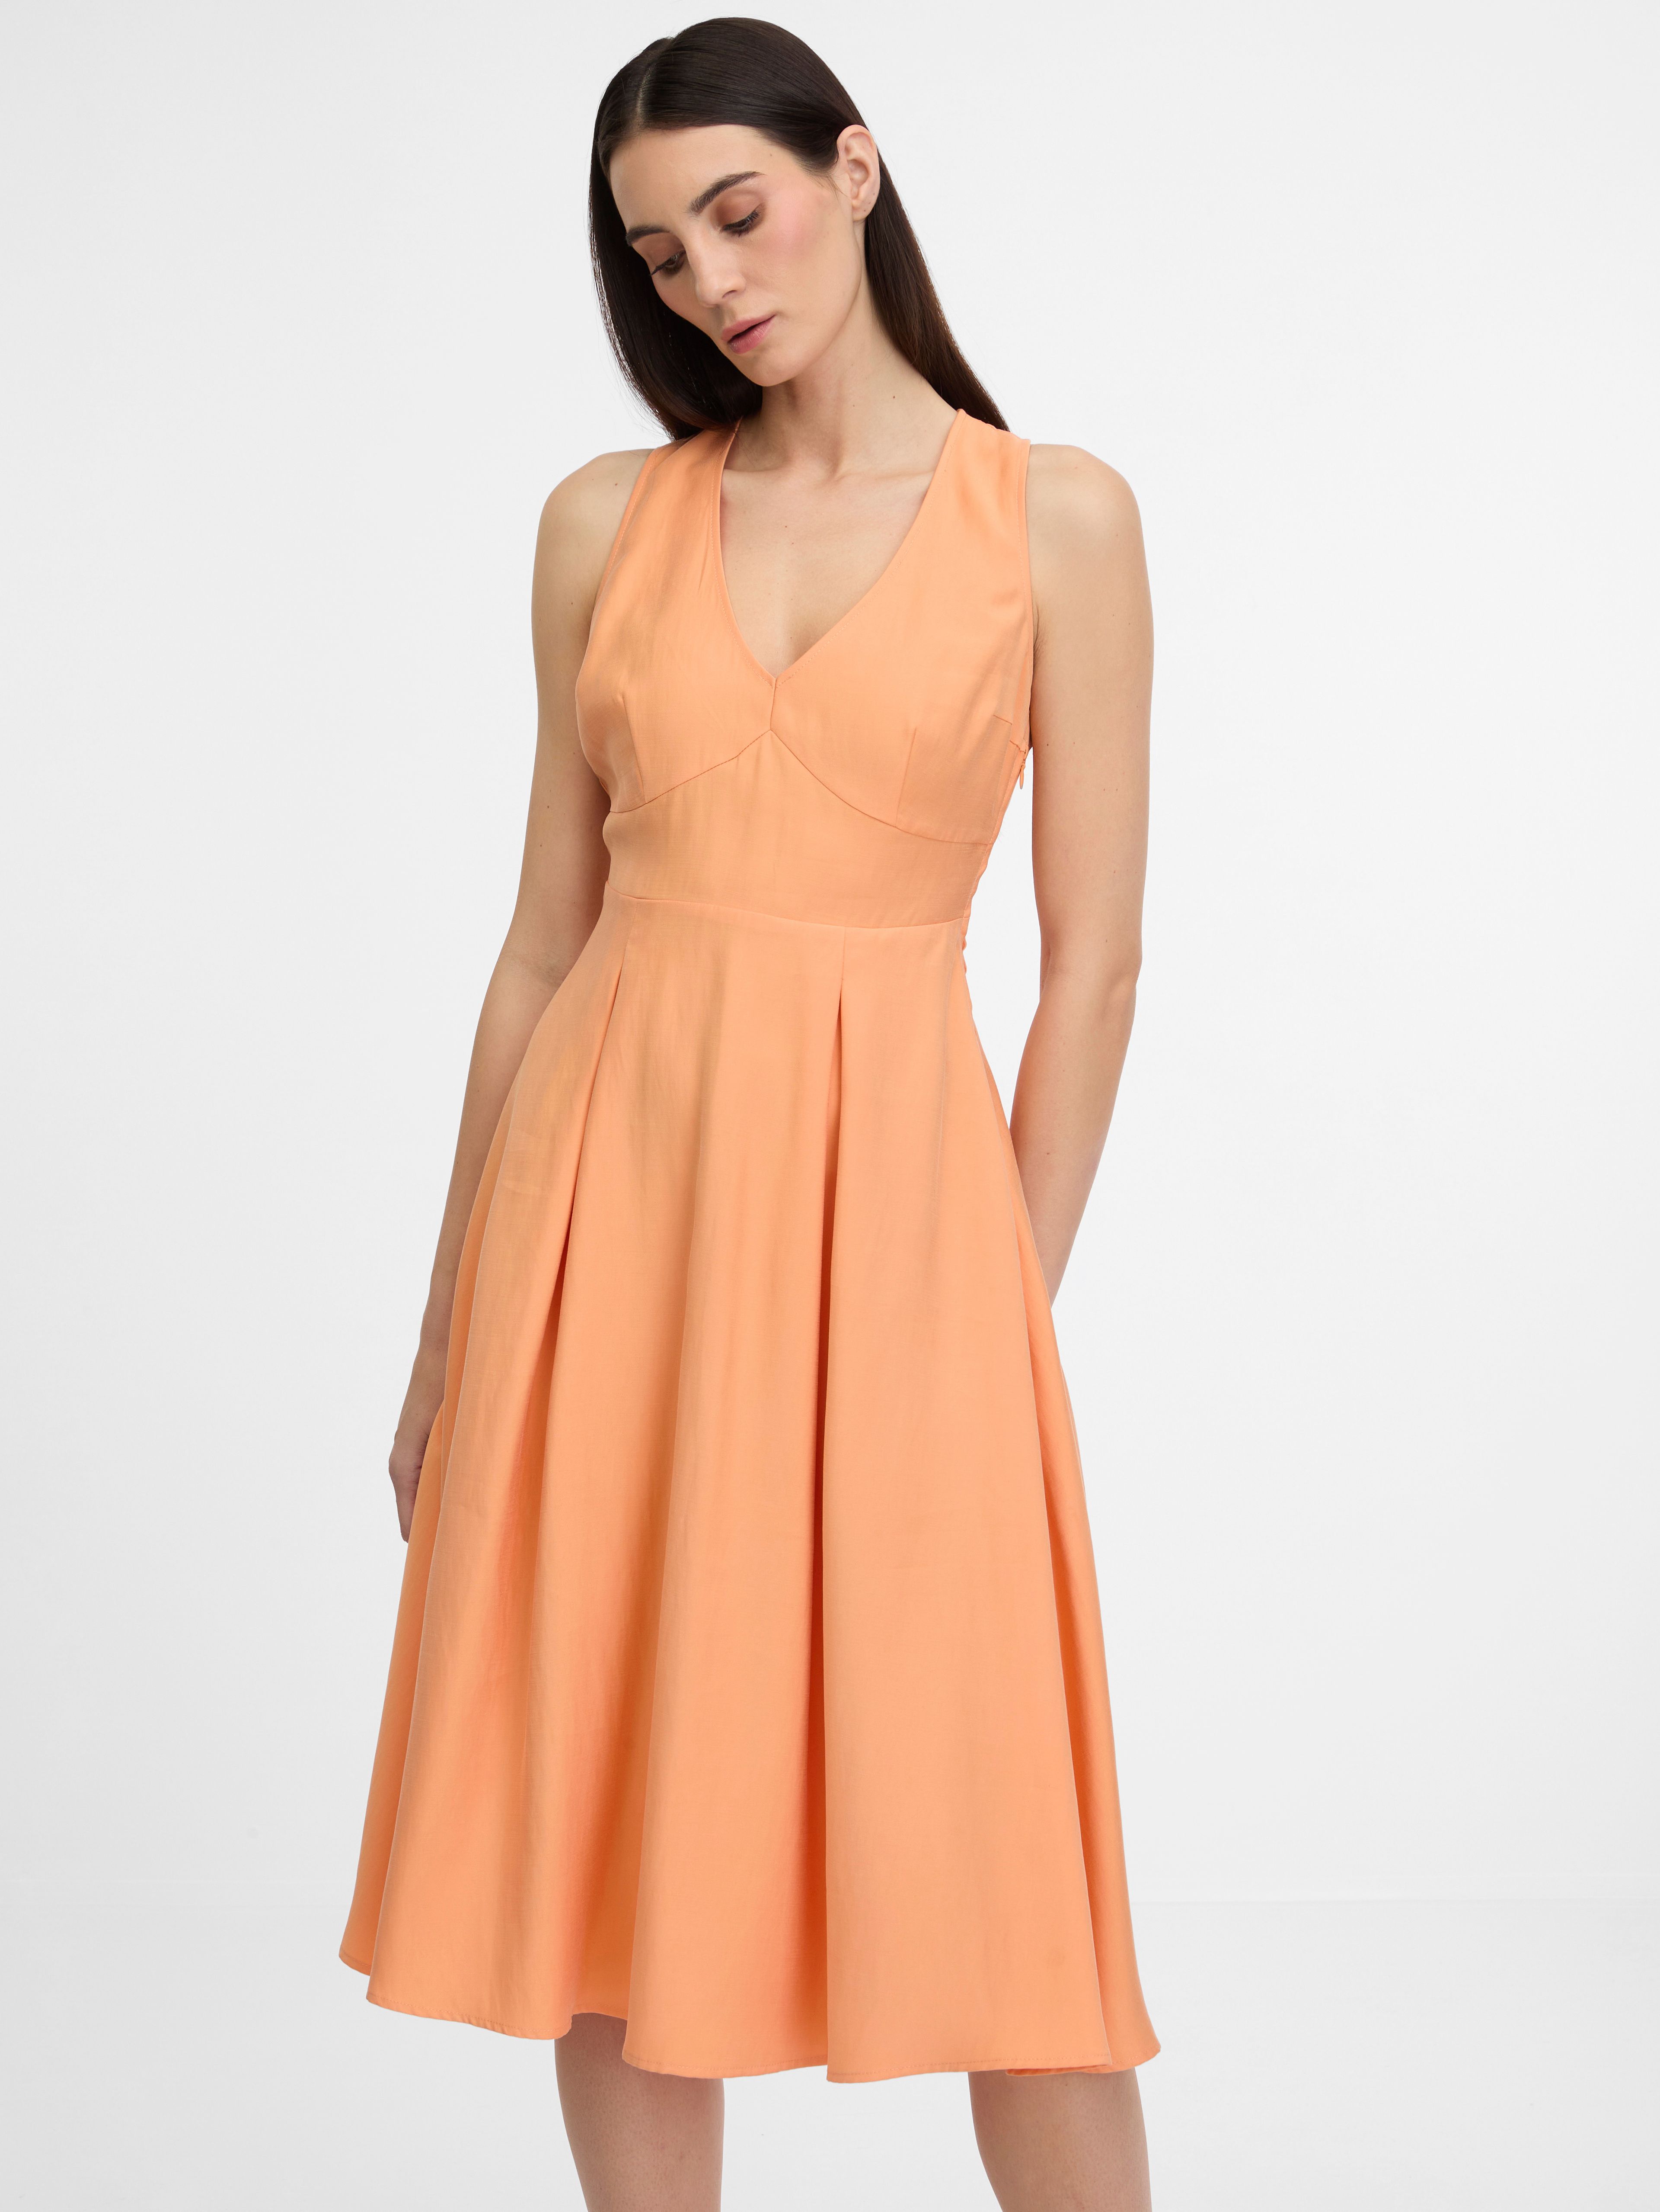 Oranžové dámské šaty ORSAY